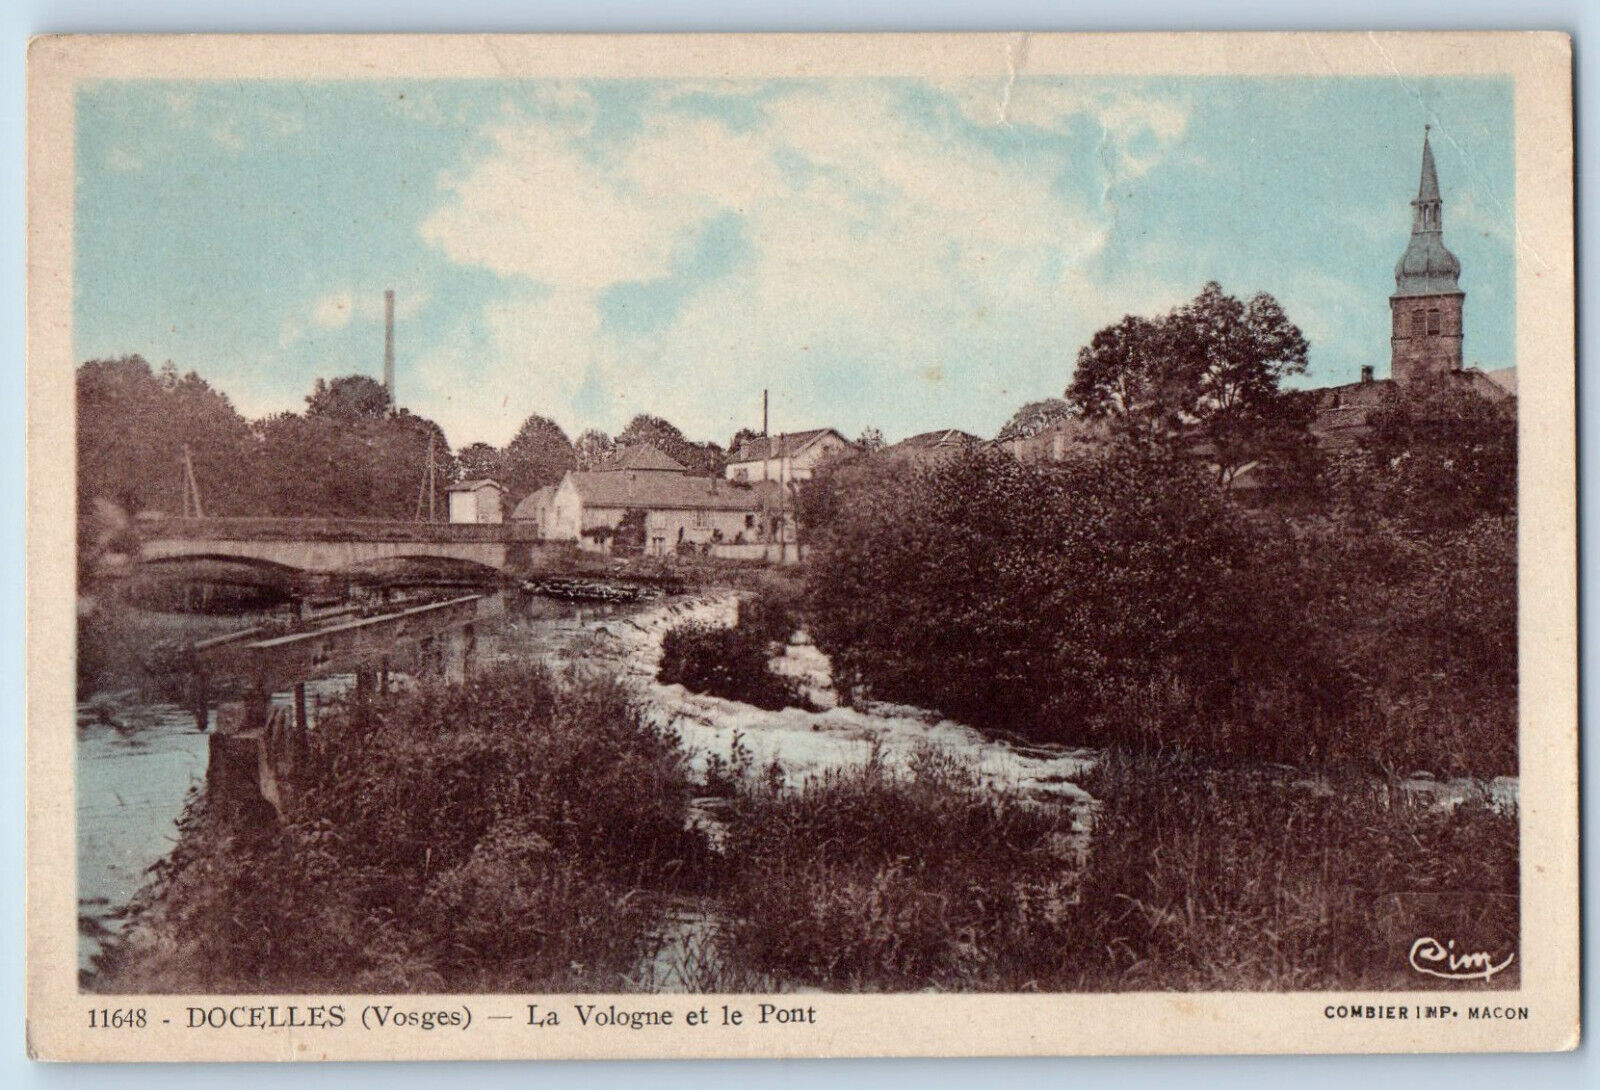 Docelles Vosges Grand Est France Postcard Vologne and the Bridge c1920\'s